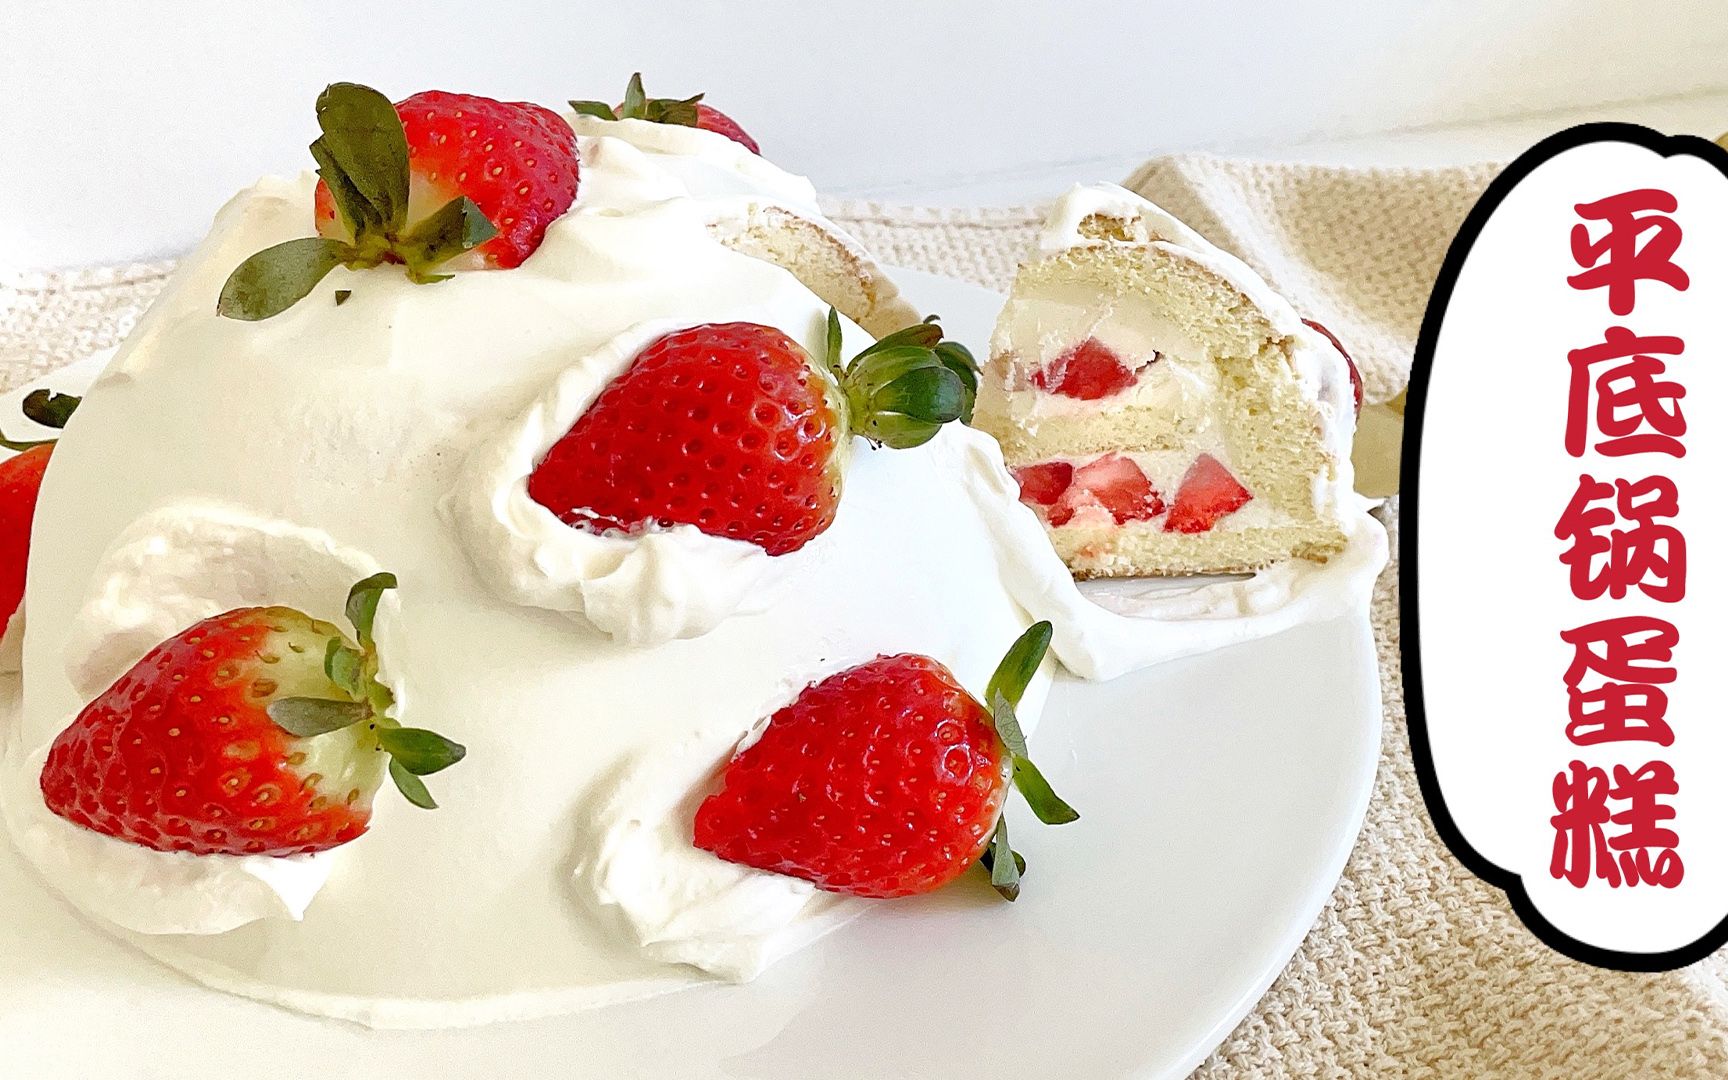 爱厨房的幸福之味: 草莓戚风蛋糕 Stawberry Chiffon Cake